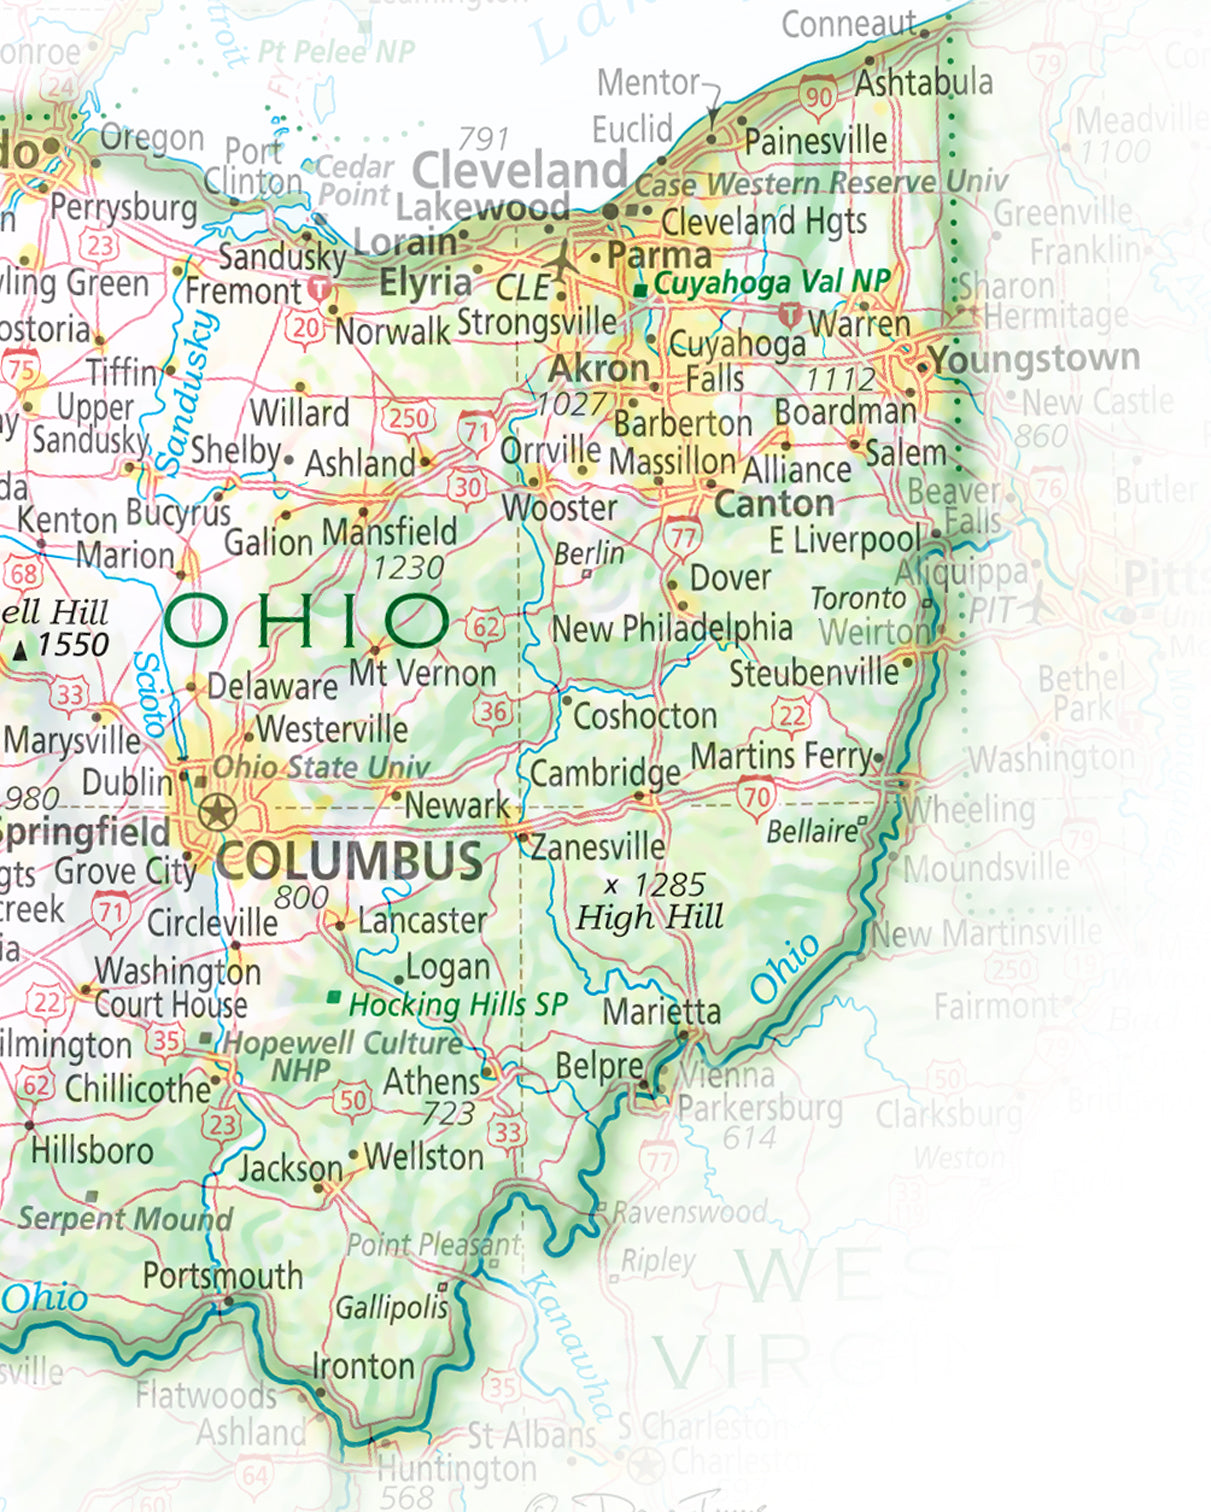 Portrait of Ohio